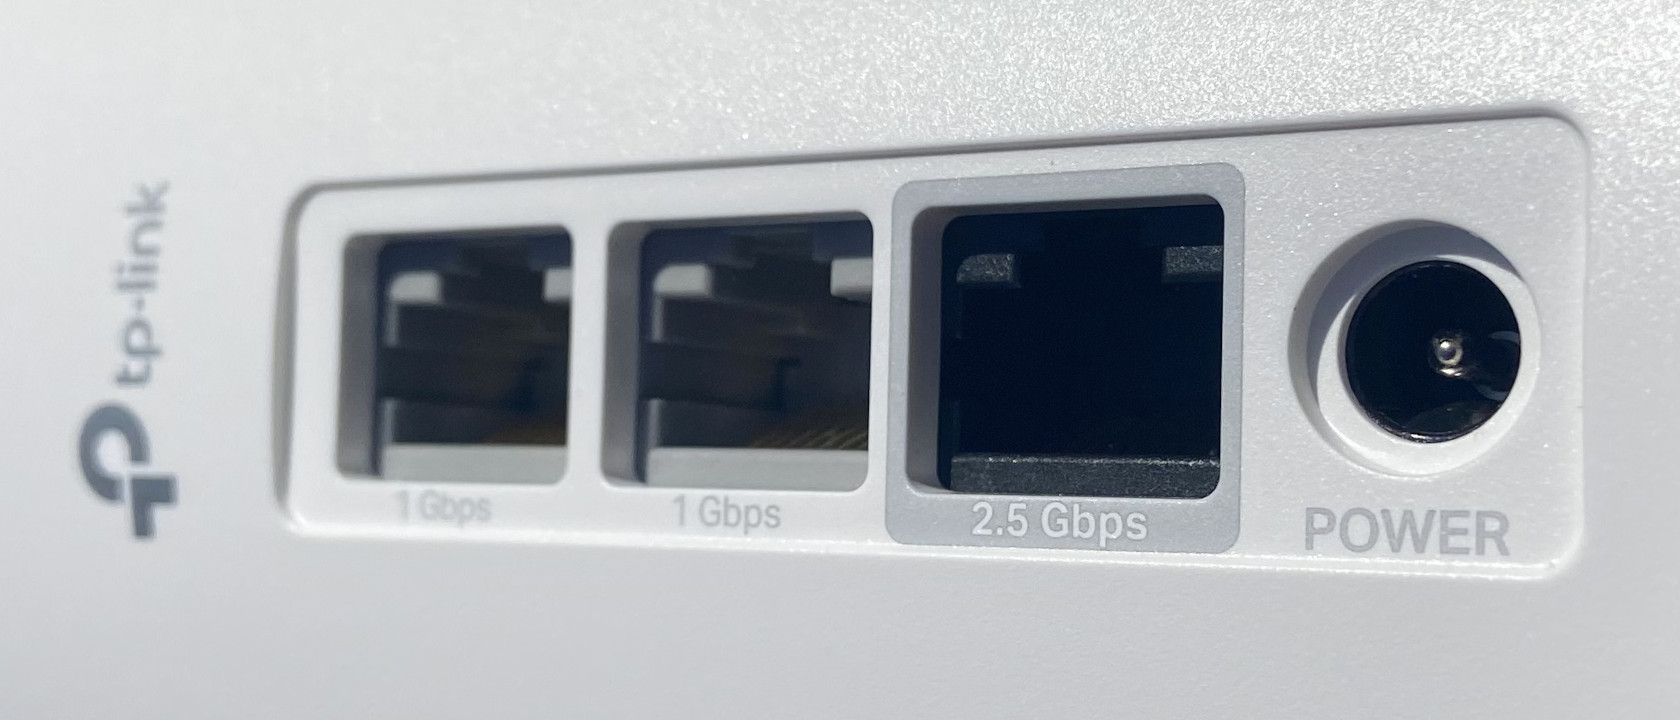 Každá jednotka TP-Link Deco XE75 Pro nabízí celkem 3 konektory LAN (1x 2,5GbE, 2x GbE port), které vám zprostředkují bleskurychlé kabelové připojení pro kritické aplikace.